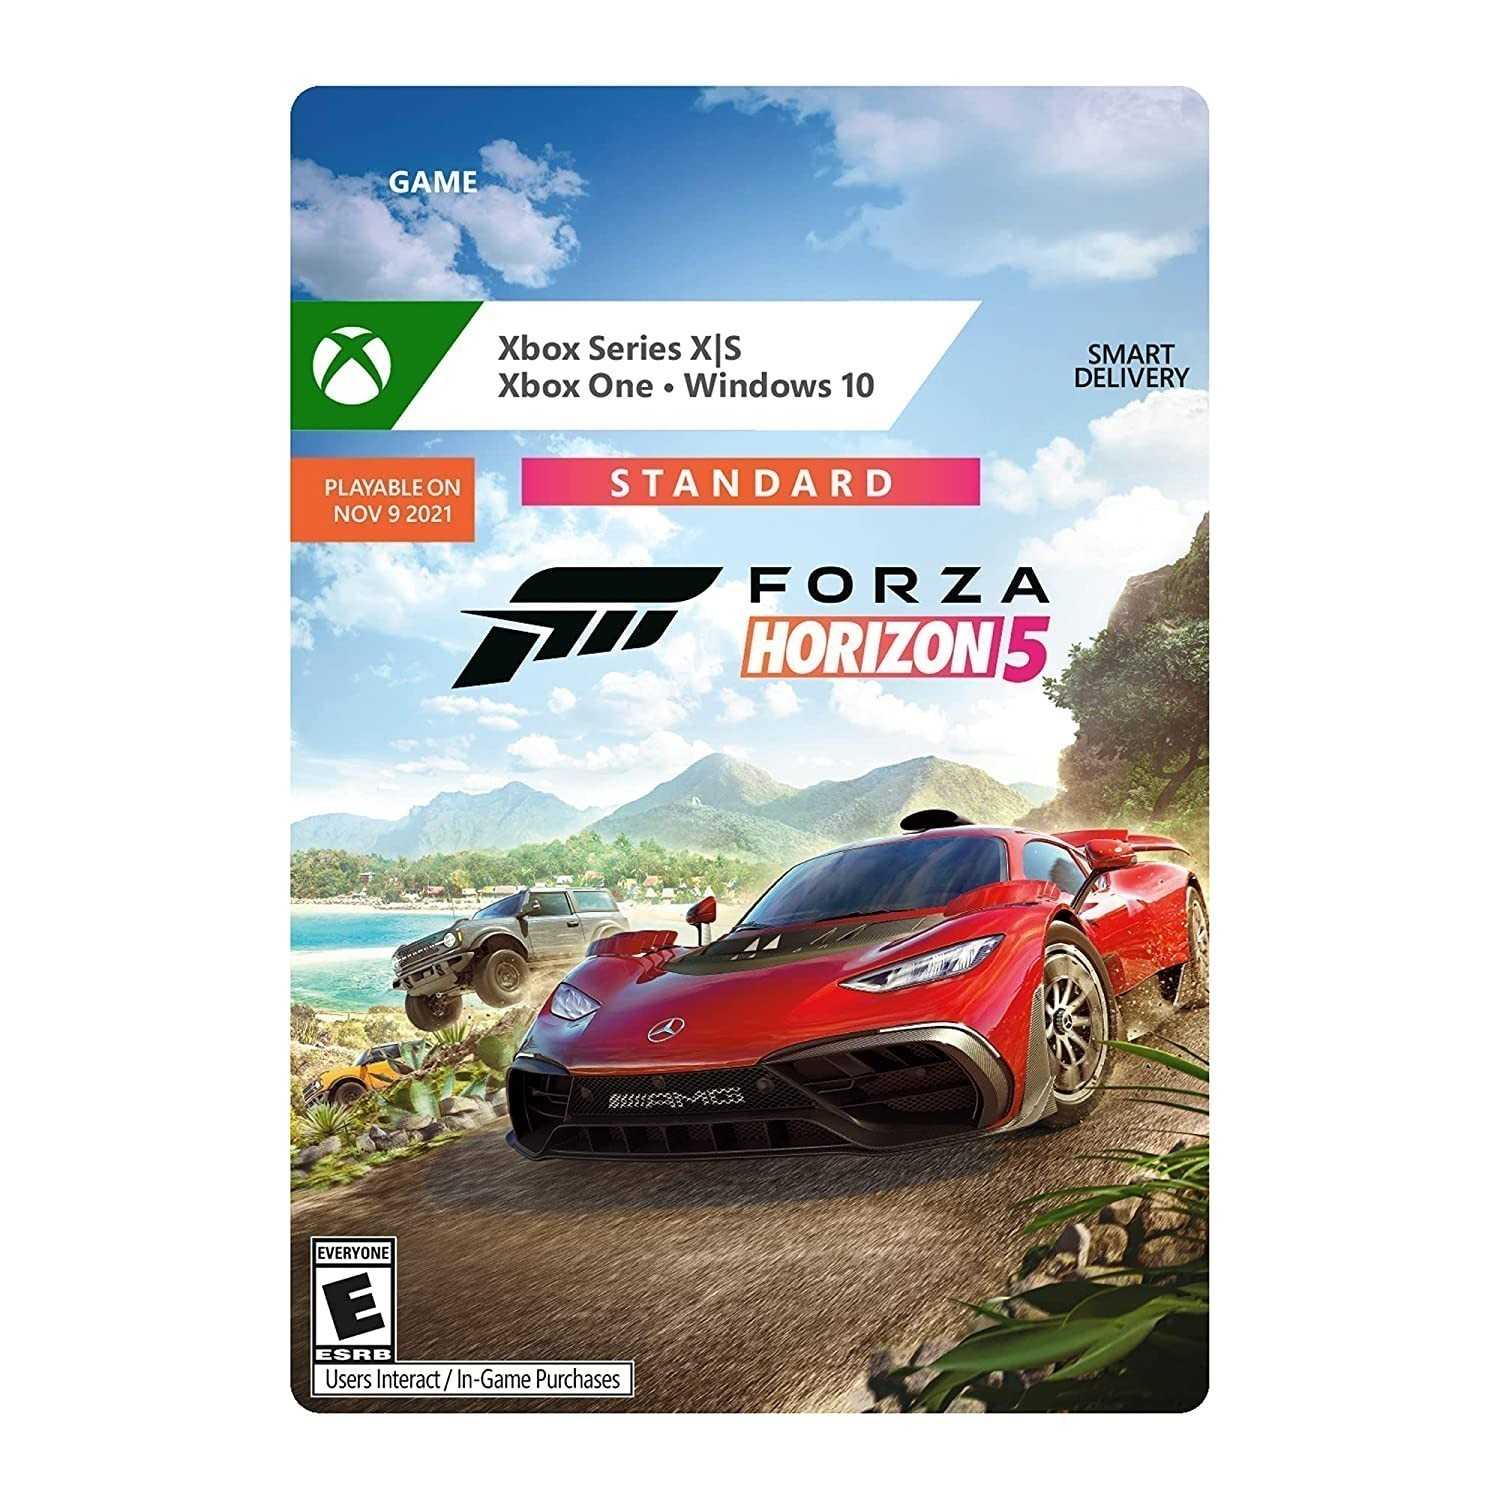 Xbox Series s Forza Horizon 5. Диск Форза 5 на Xbox. Диск Forza Horizon 5 на Xbox Series s. Форза 5 на Xbox Series s. Форза хбокс